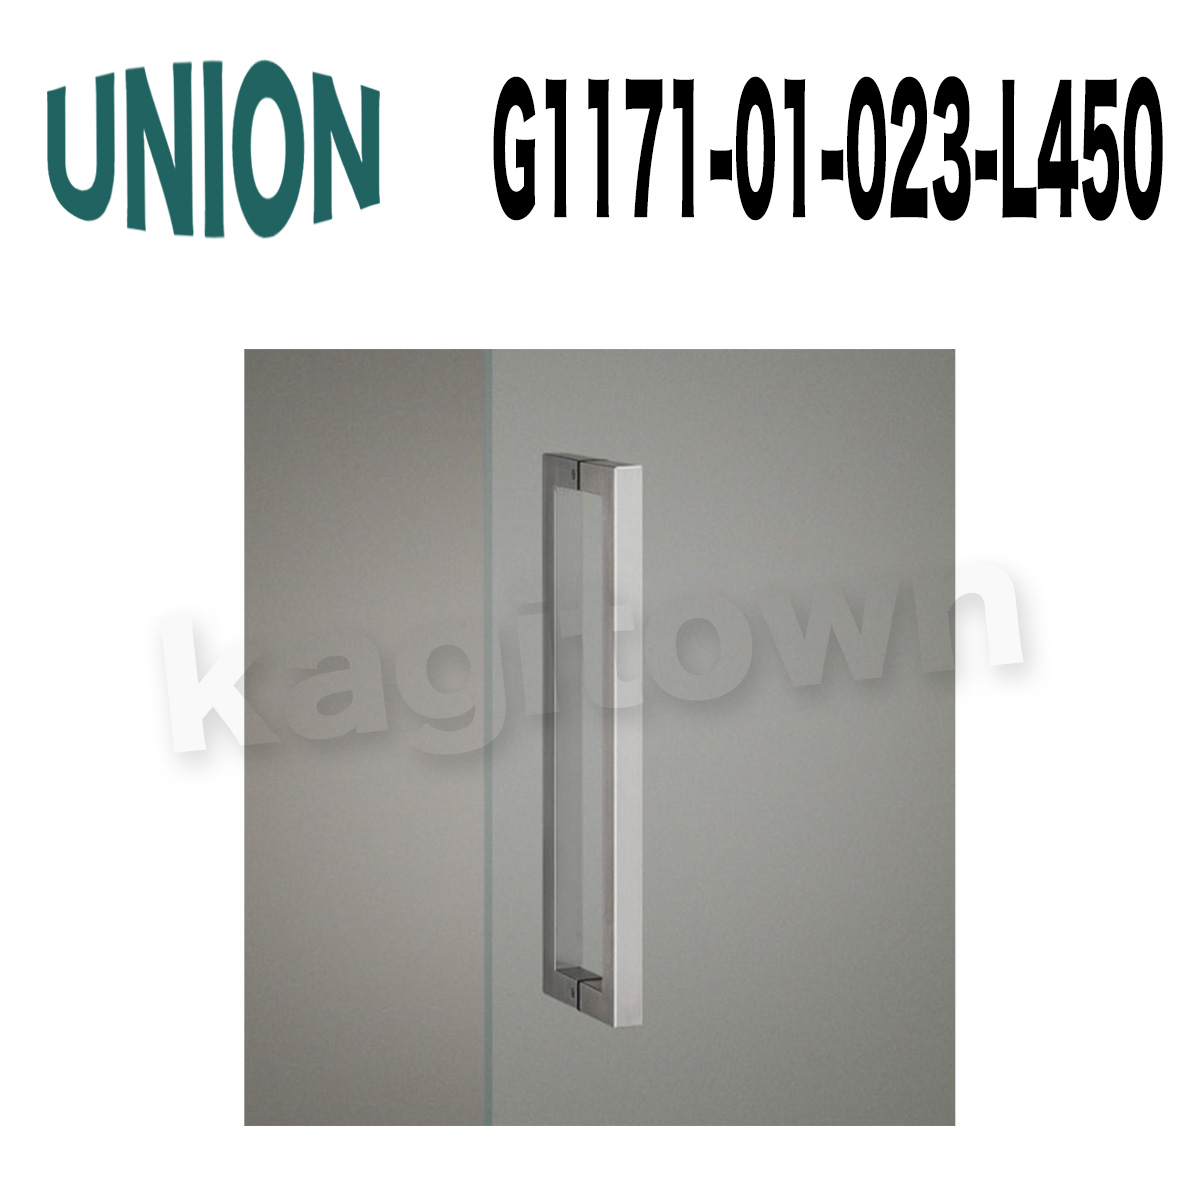 UNION【ユニオン】G1171-01-001-L300 ドアハンドル]押し棒（内外